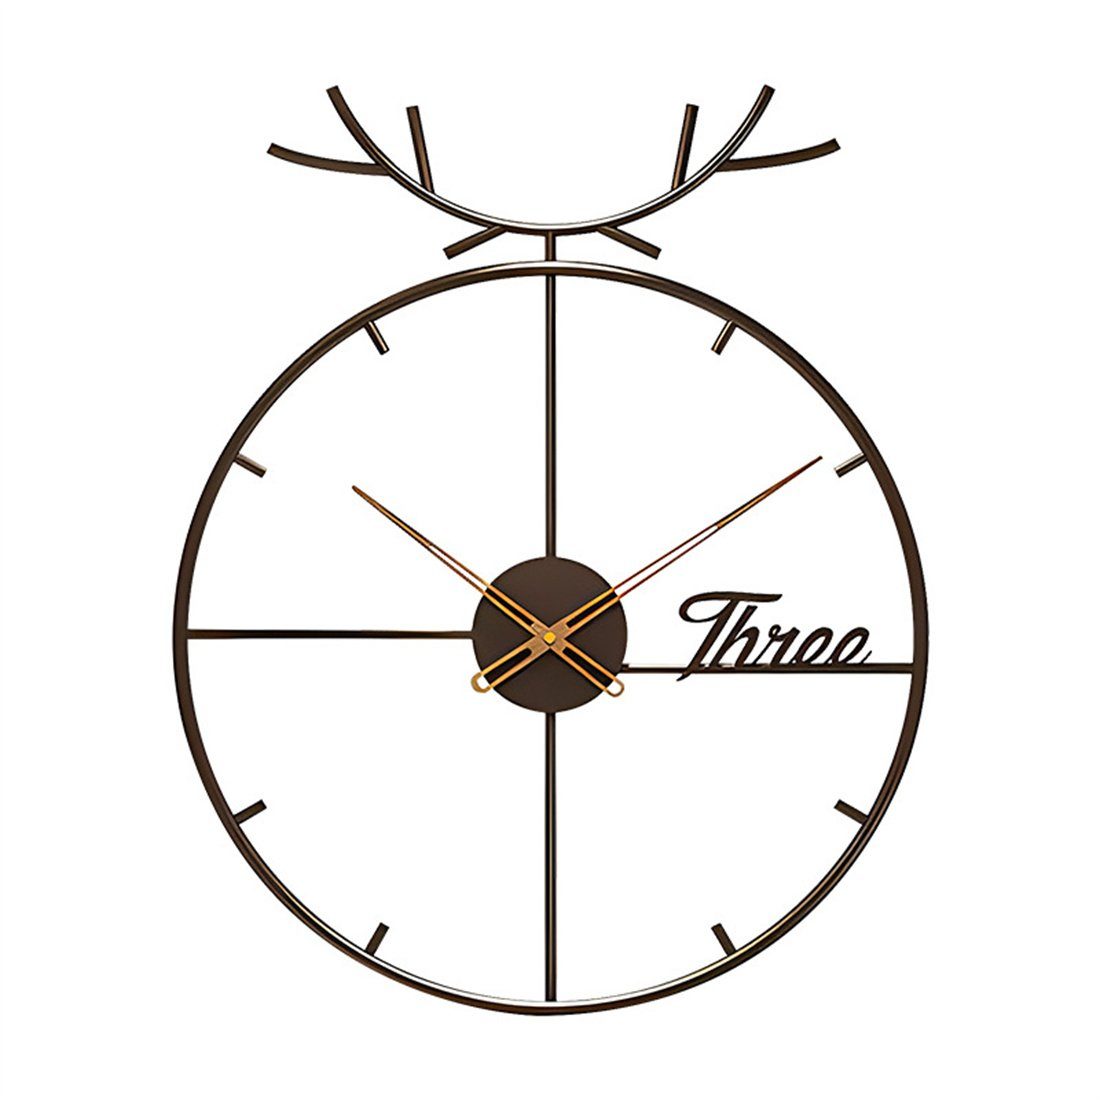 DÖRÖY 55cm stille mit Moderne dekorative Eisen Hirschkopf, Uhr aus Wanduhr Wanduhr